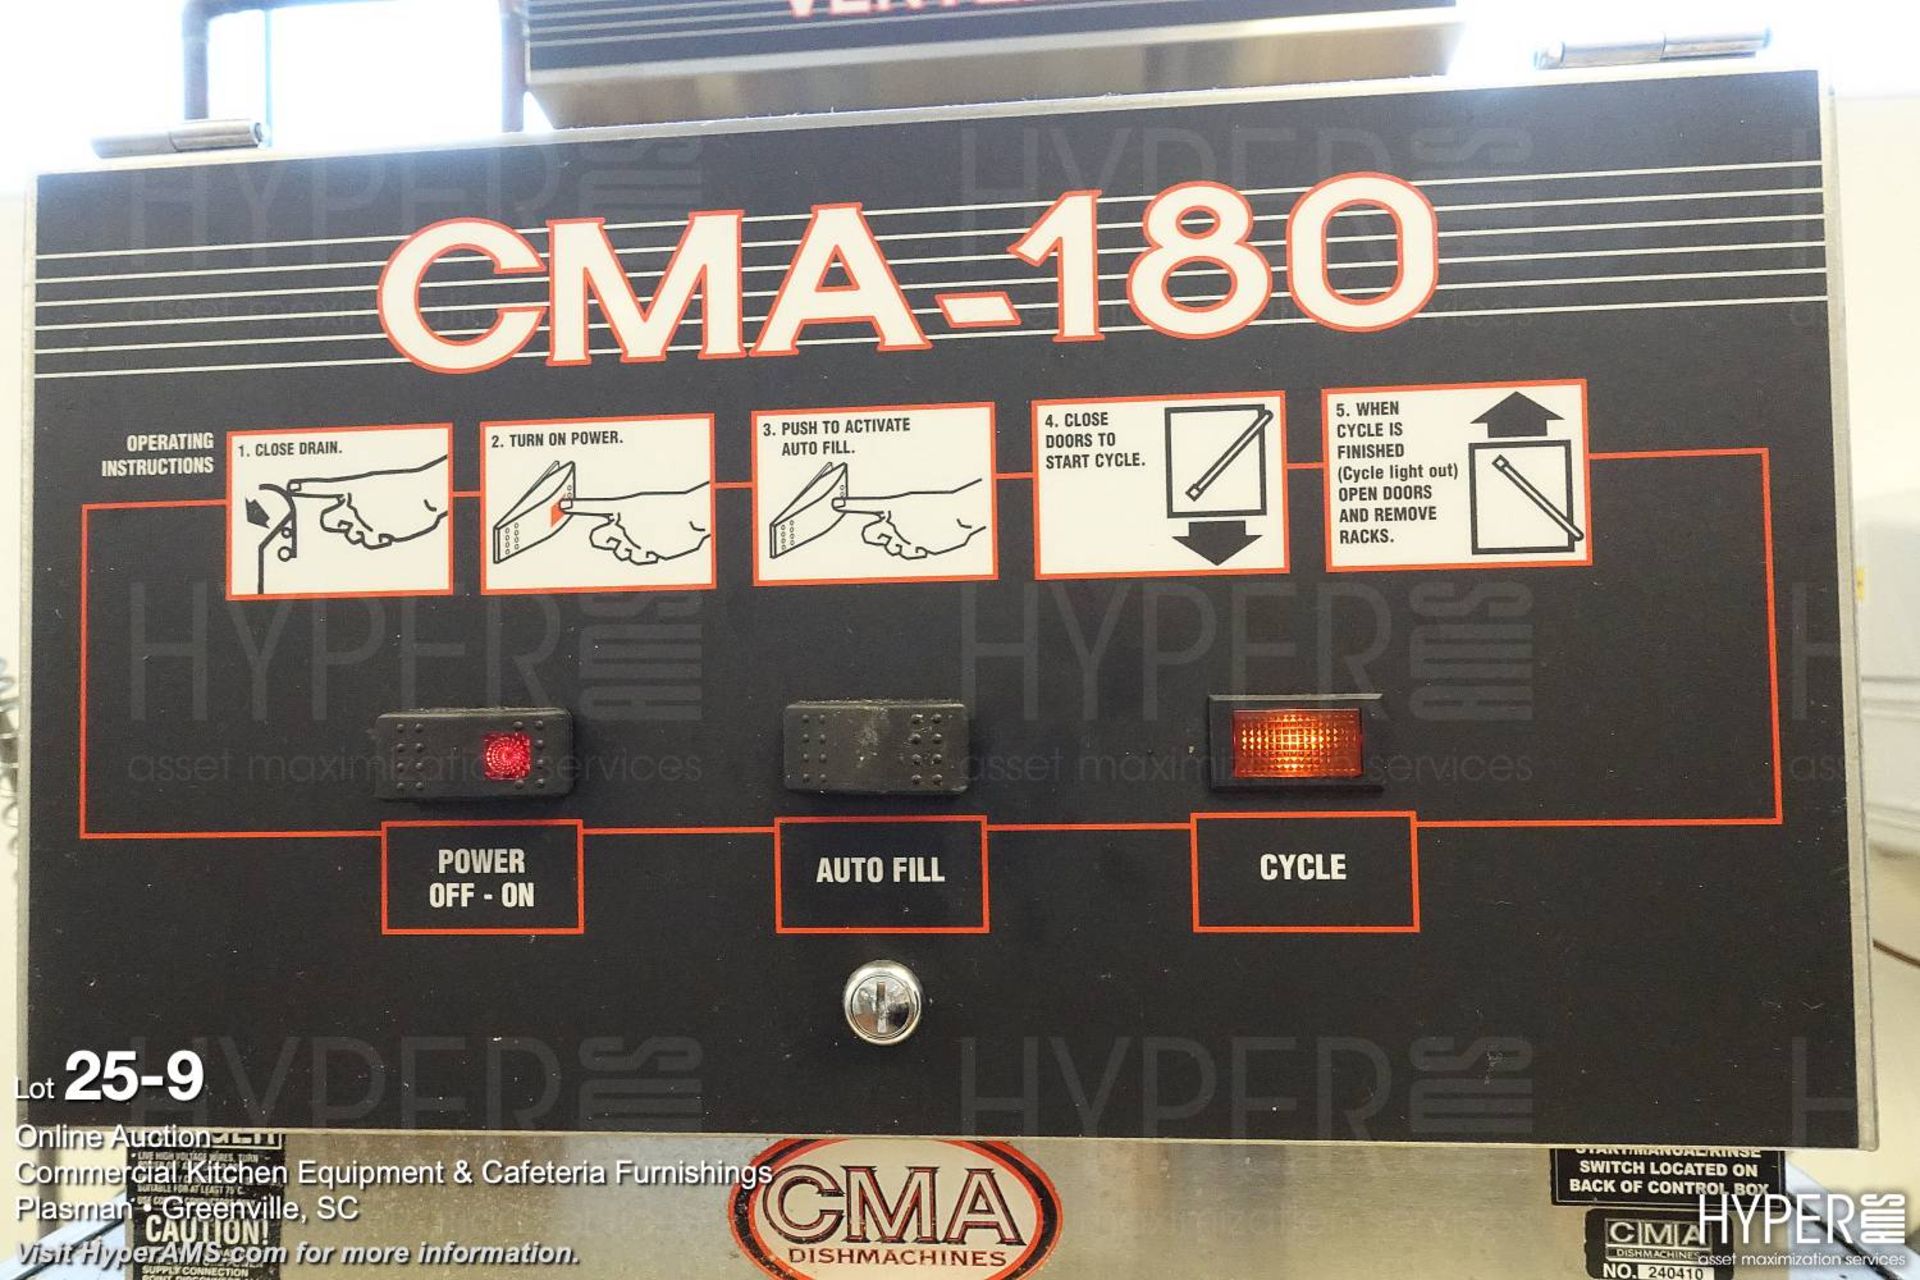 CMA Dishwasher line - Image 9 of 10